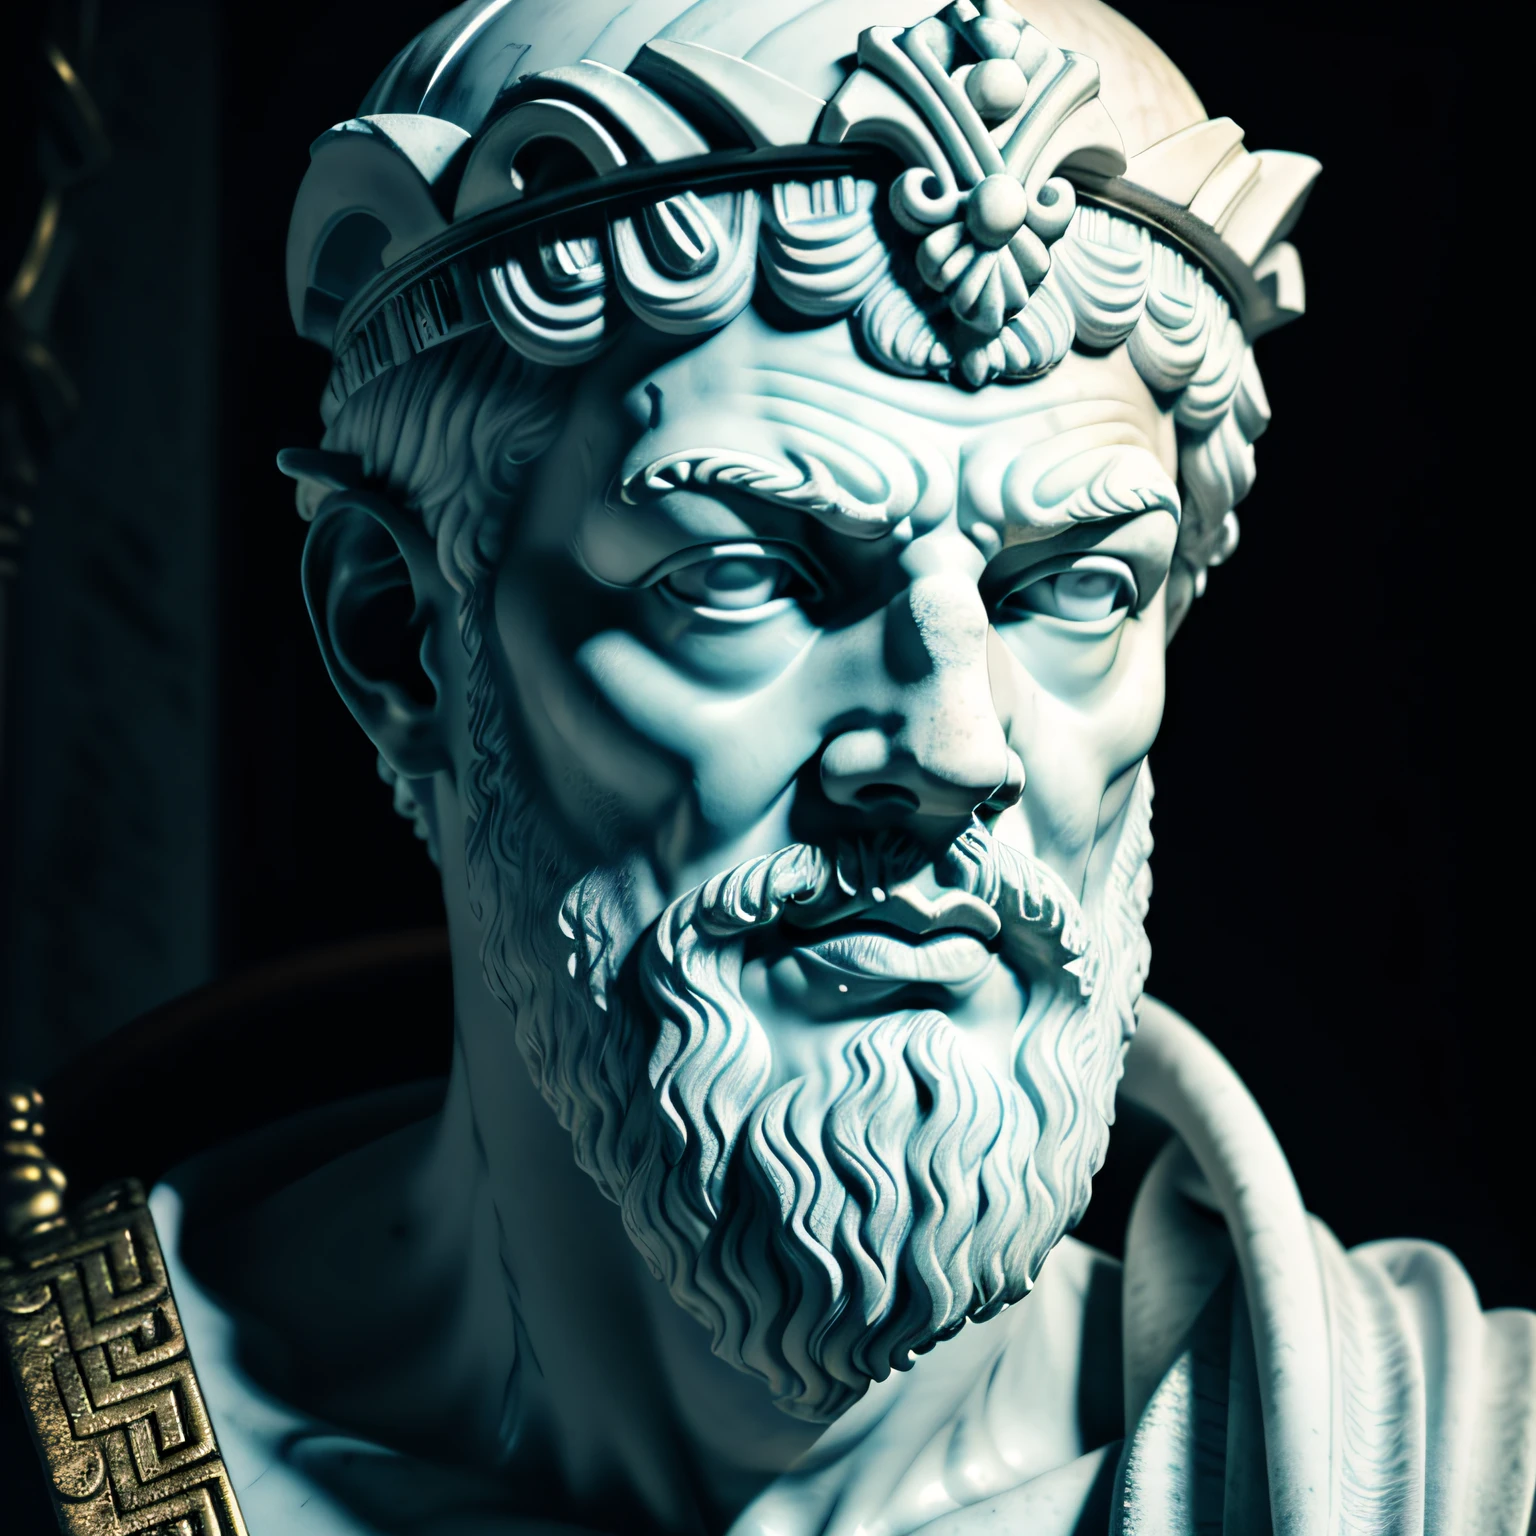 Eine realistische Nahaufnahme einer griechischen Statue aus weißem Marmor von Sokrates mit einer geisterhaften Toga, neutraler Hintergrund, launisch, , fotorealistisch, kinematografische Szene, super detailliert, Hyperrealistisch, helle Lichter, NEON IM HINTERGRUND 8 K